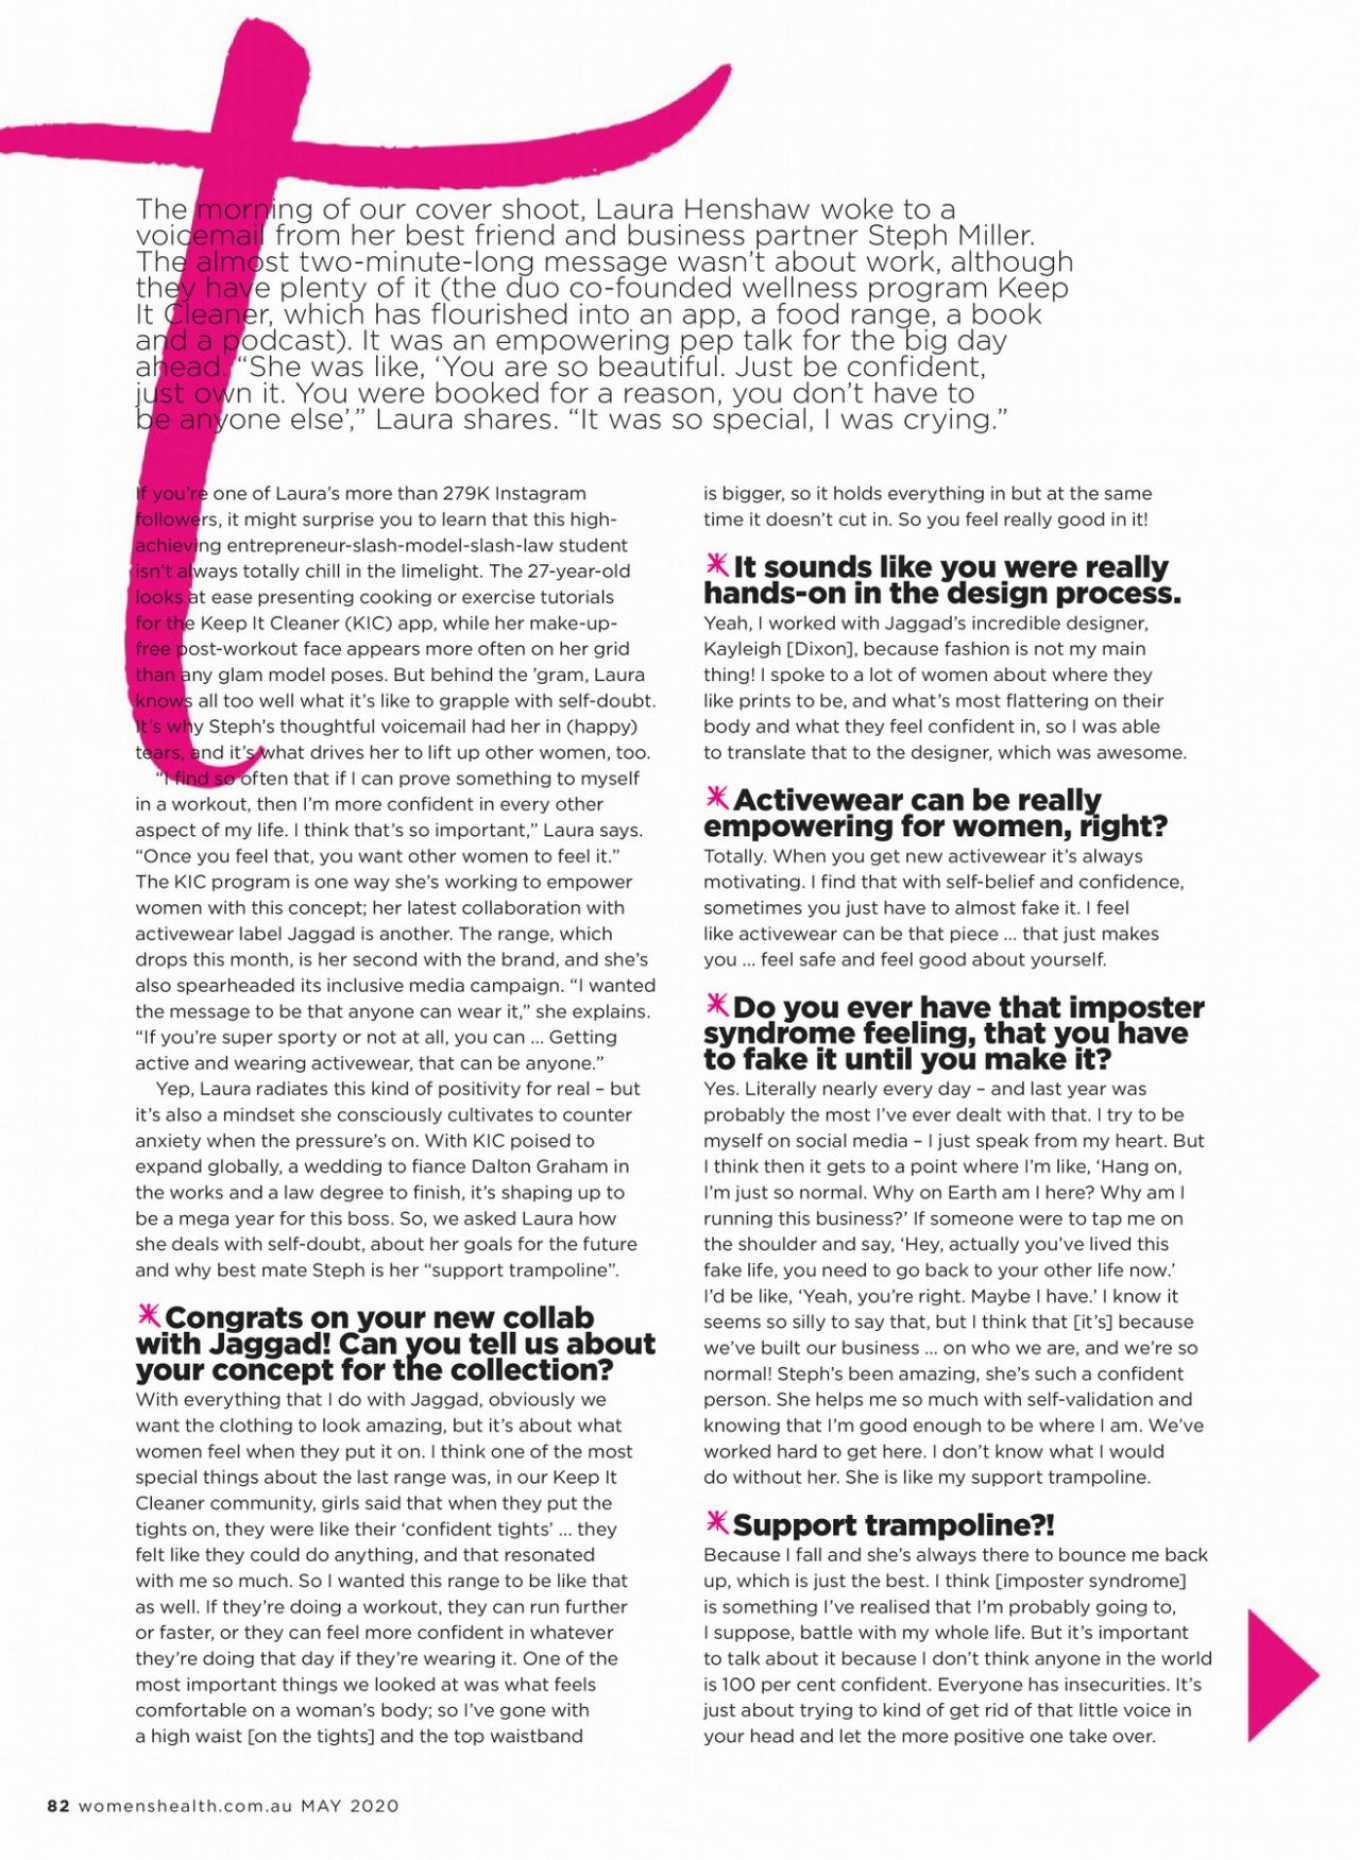 Laura Henshaw â€“ Womenâ€™s Health Australia Magazine (May 2020)